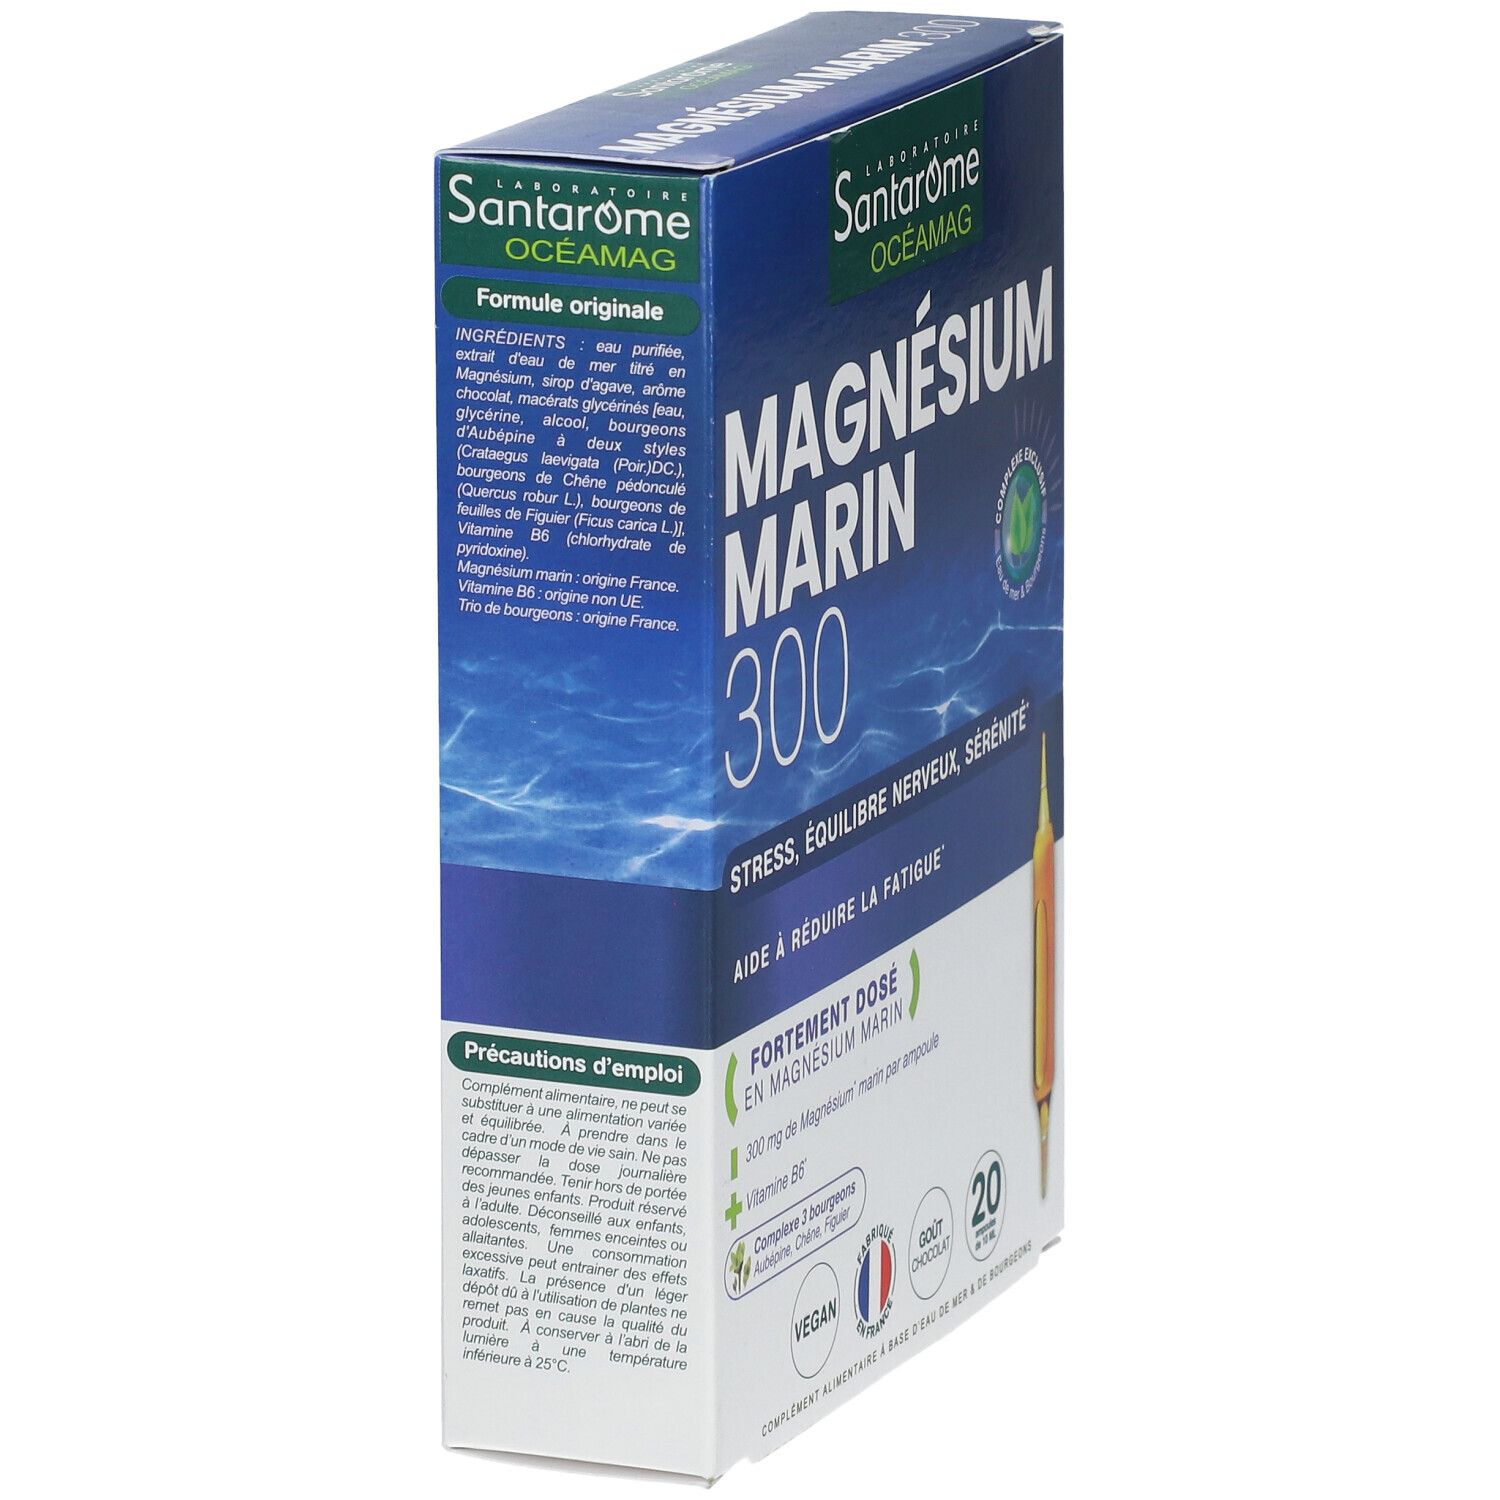 Santarome Magnésium Marin 300